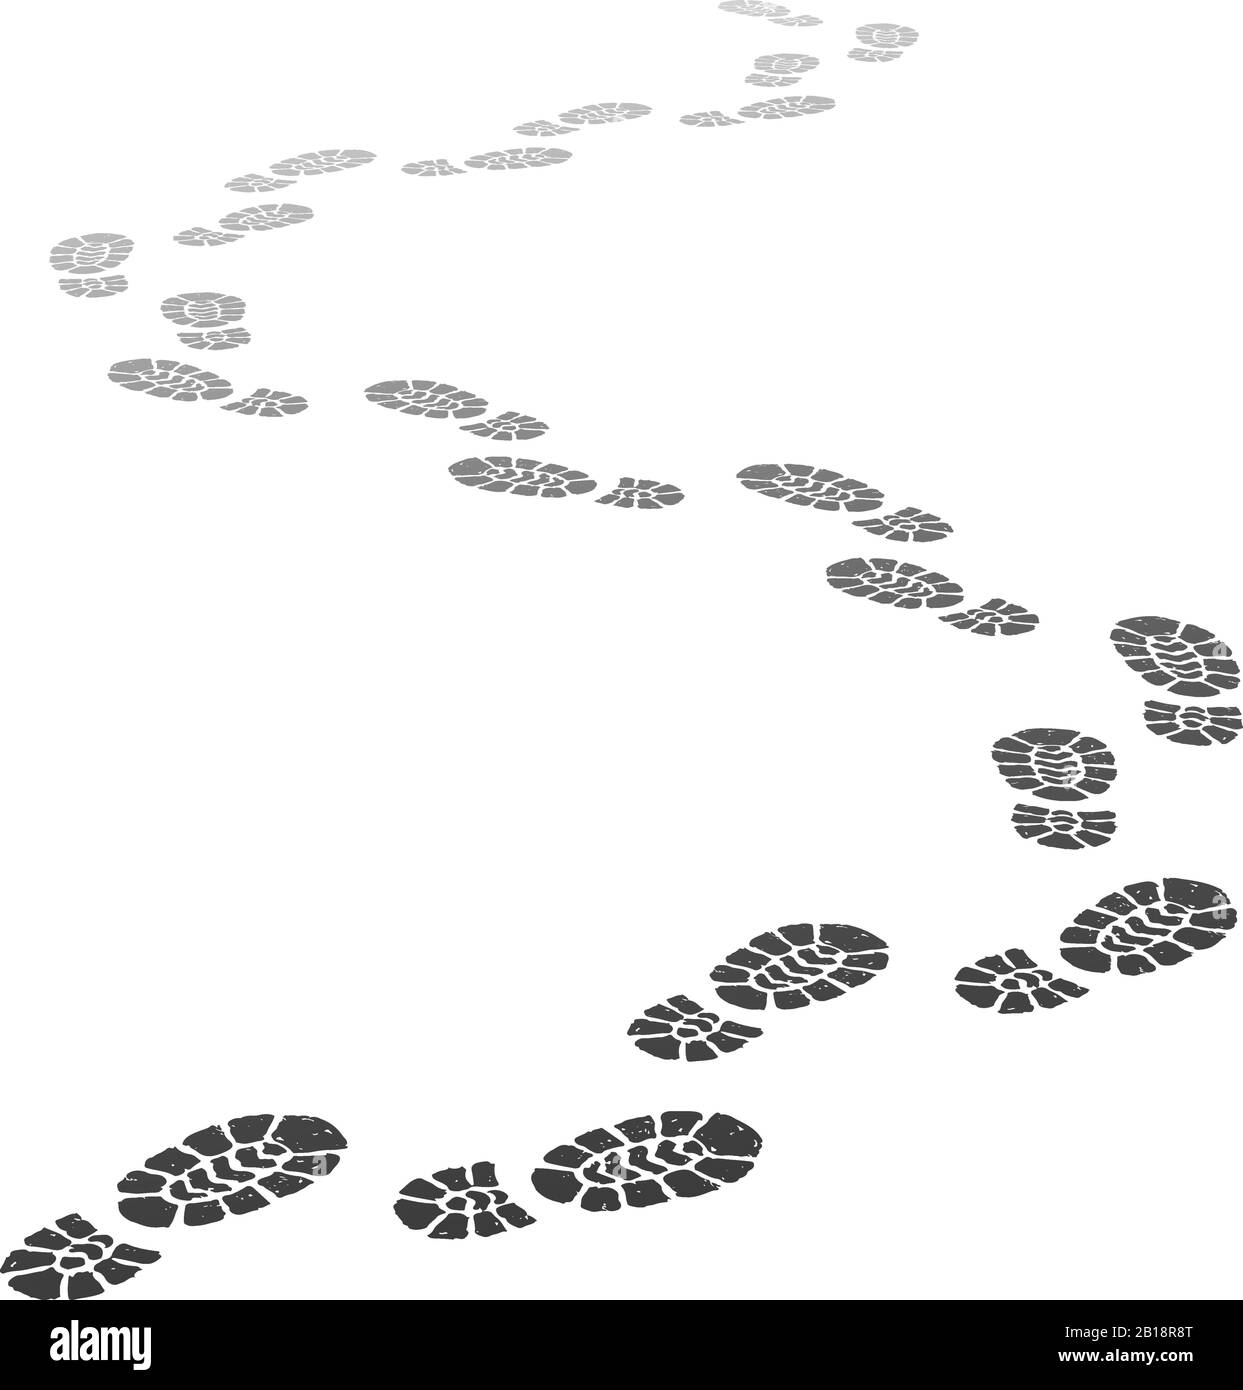 Fußstapfen zu Fuß. Outgoing Footprint Silhouette, Fußsteps und Schuhschritte in perspektivischer Vektordarstellung Stock Vektor